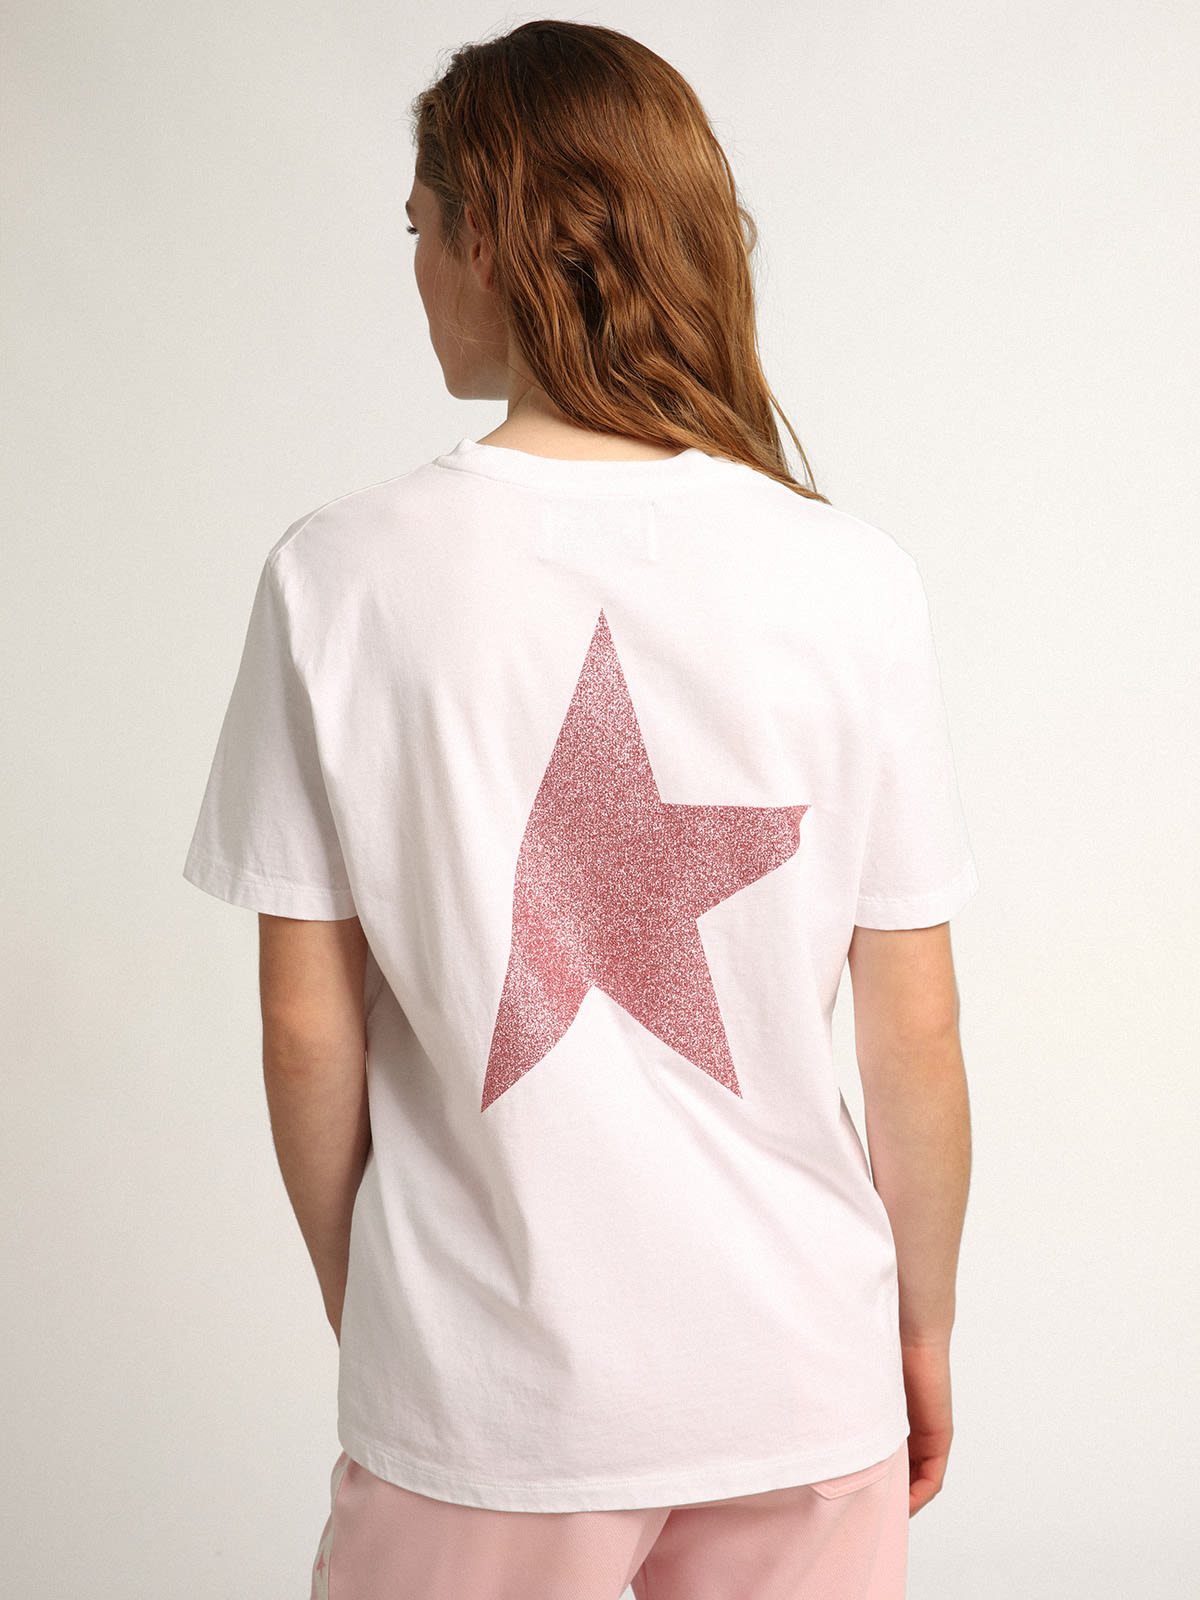 Golden Goose - T-shirt bianca Collezione Star con logo e stella in glitter rosa in 